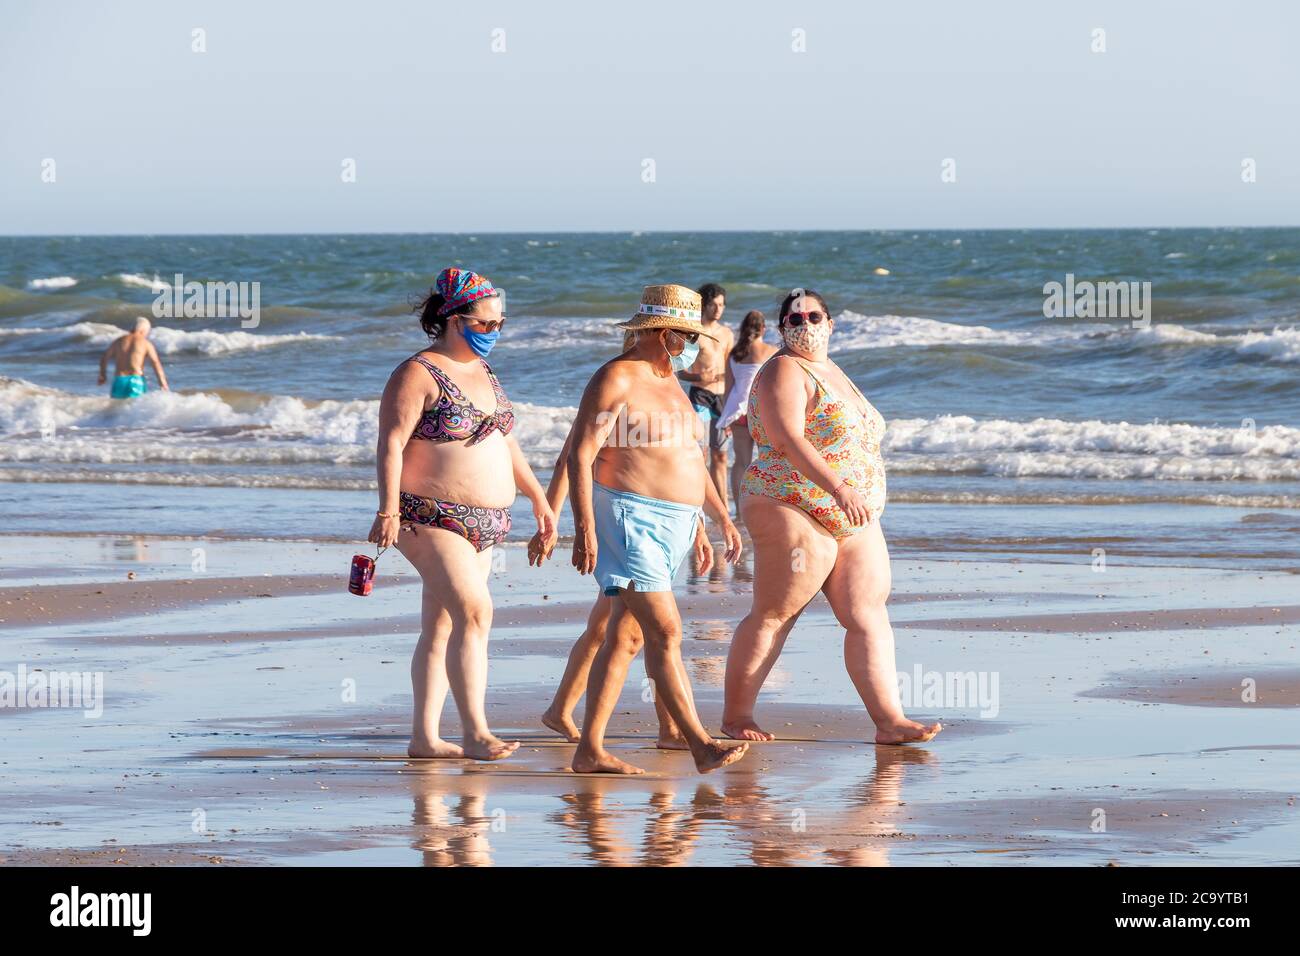 Punta Umbria, Huelva, Spanien - 2. August 2020: Menschen mit Übergewicht beim Strandspaziergängen mit schützenden oder medizinischen Gesichtsmasken. Neue Normalität in Spai Stockfoto